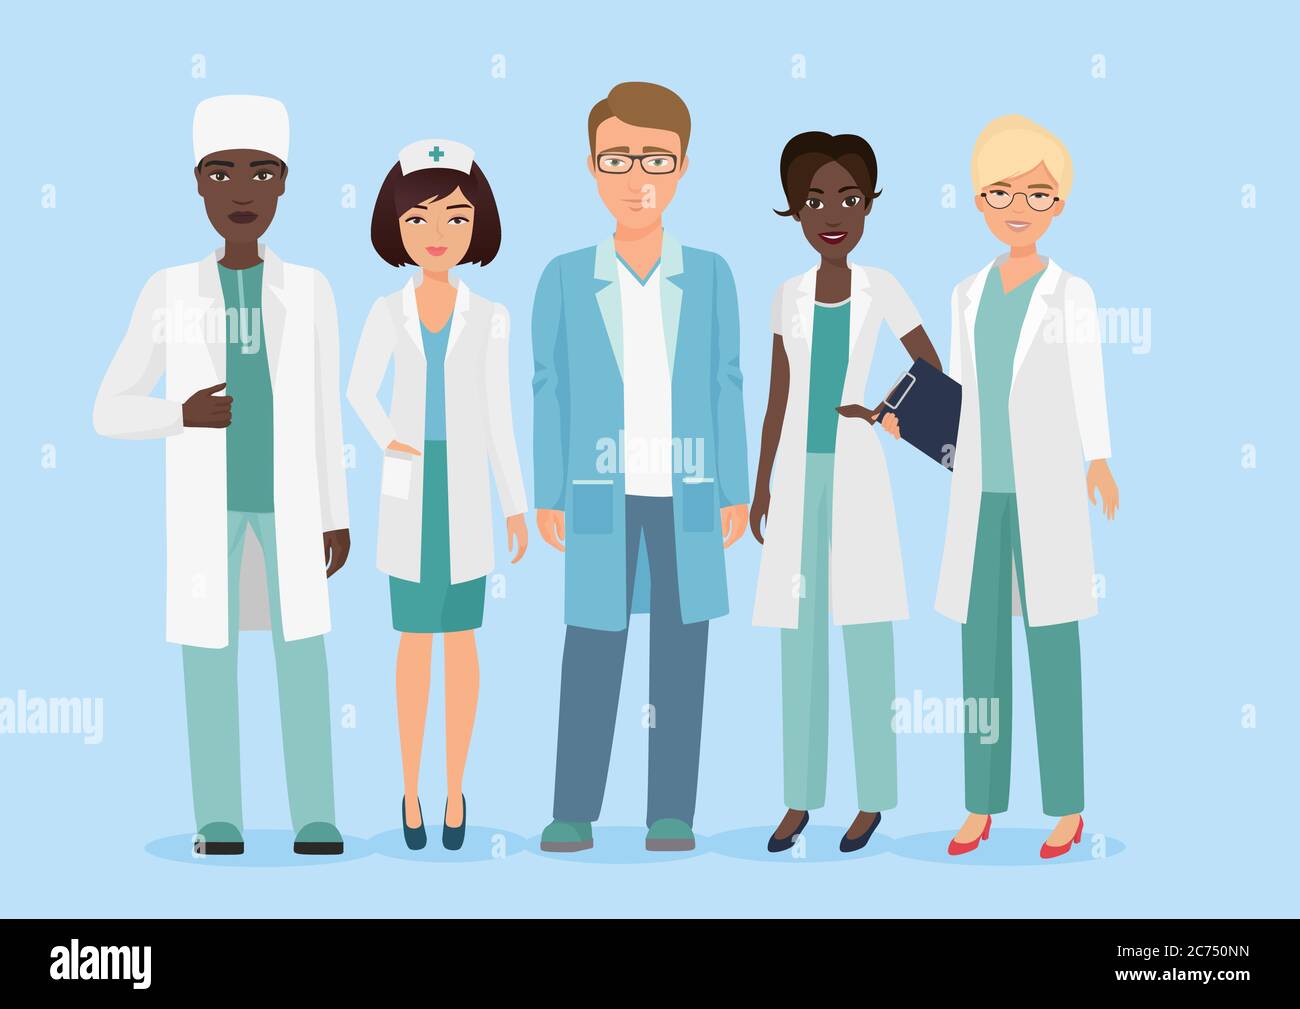 Illustration vectorielle d'un dessin animé représentant l'équipe médicale de l'hôpital, les médecins et les infirmières. Concept médical Illustration de Vecteur